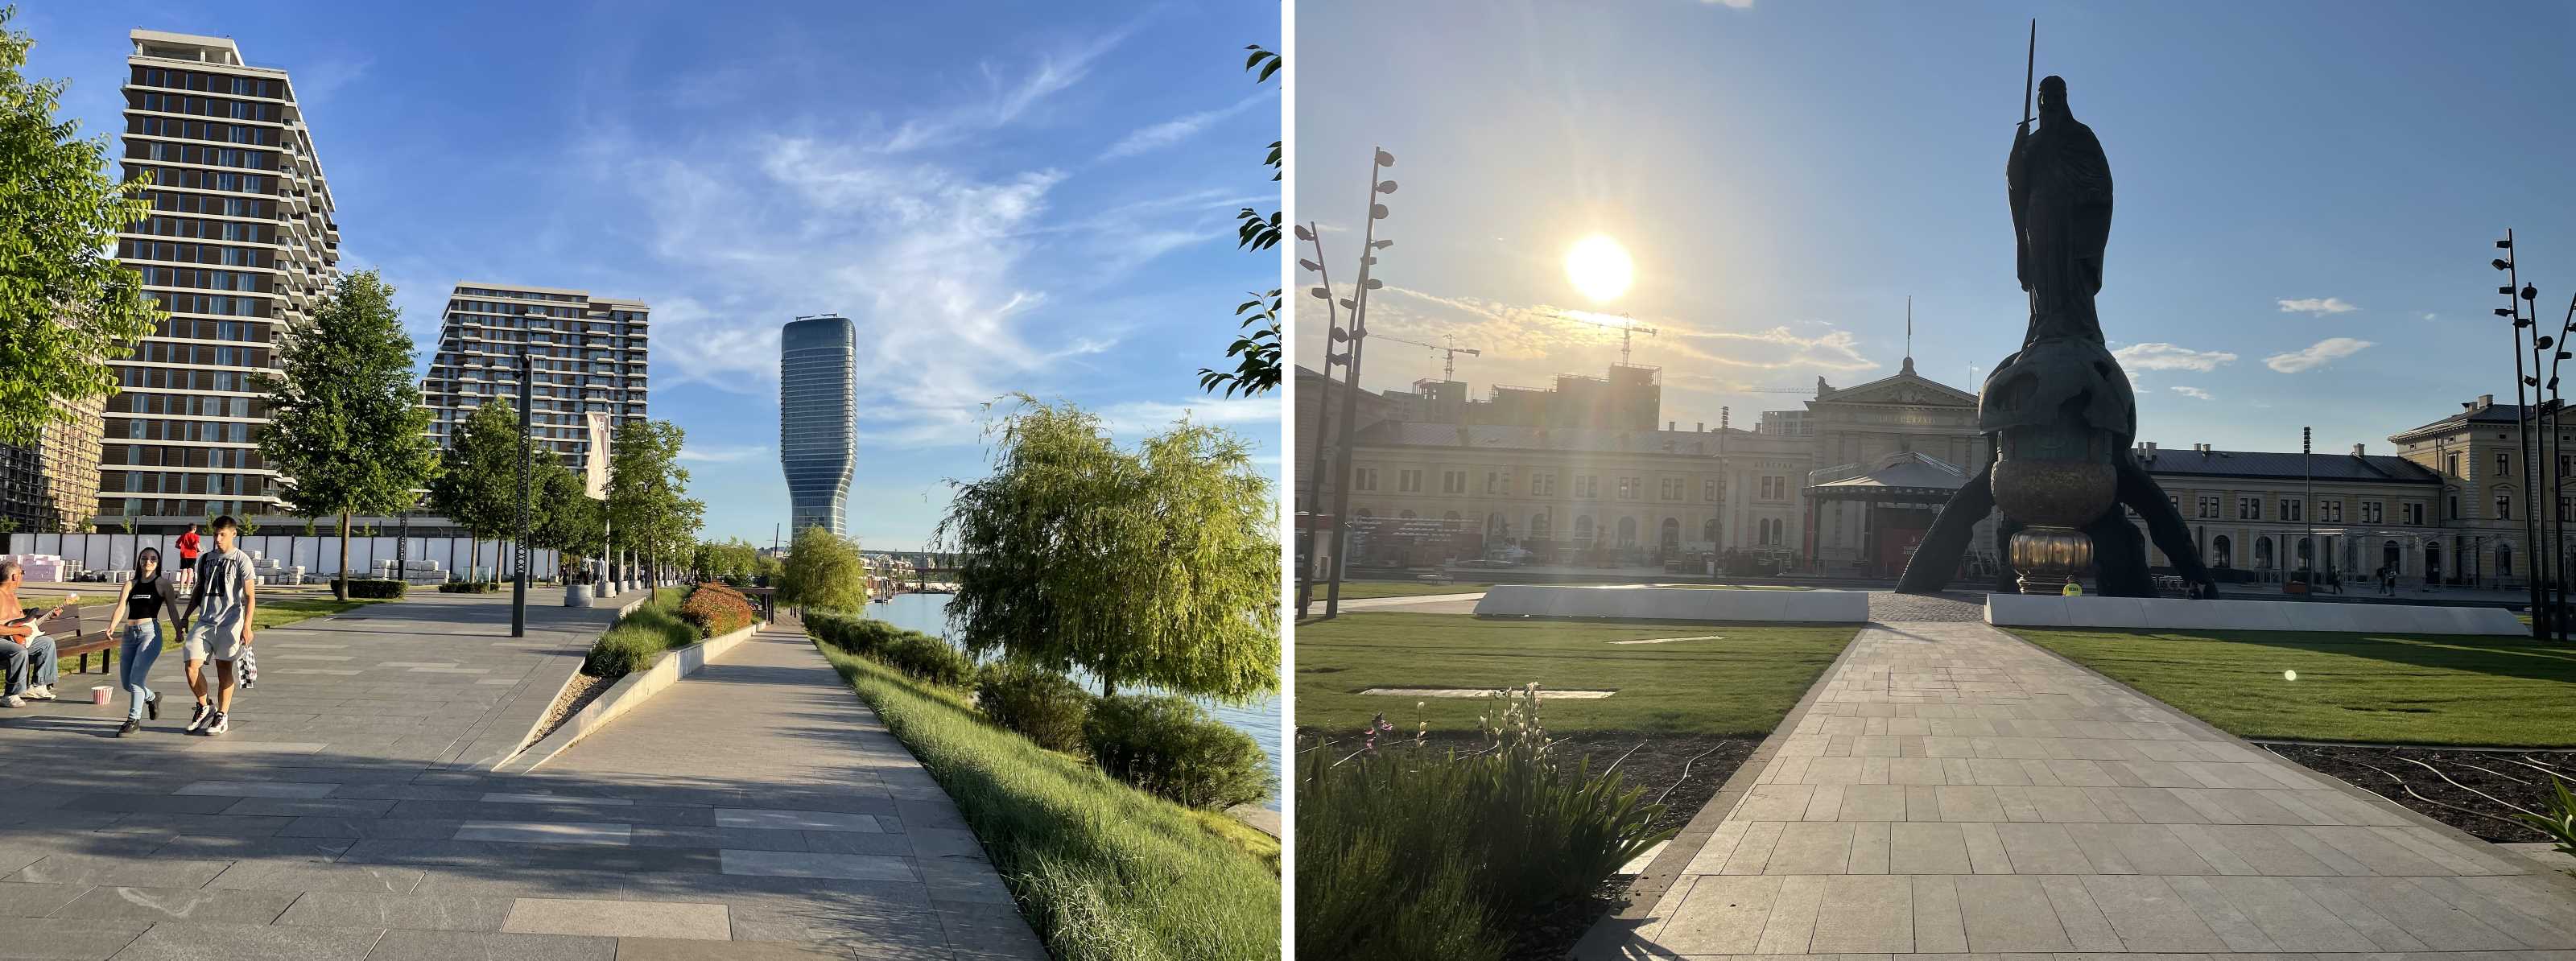 Abb. 6 Neue städtische Wahrzeichen. Links: Save-Promenade mit dem Belgrad-Turm (Kula Beograd). Rechts: Saveplatz mit dem Stefan-Nemanja-Denkmal (Quelle: Aufnahmen d. A., Mai 2022)